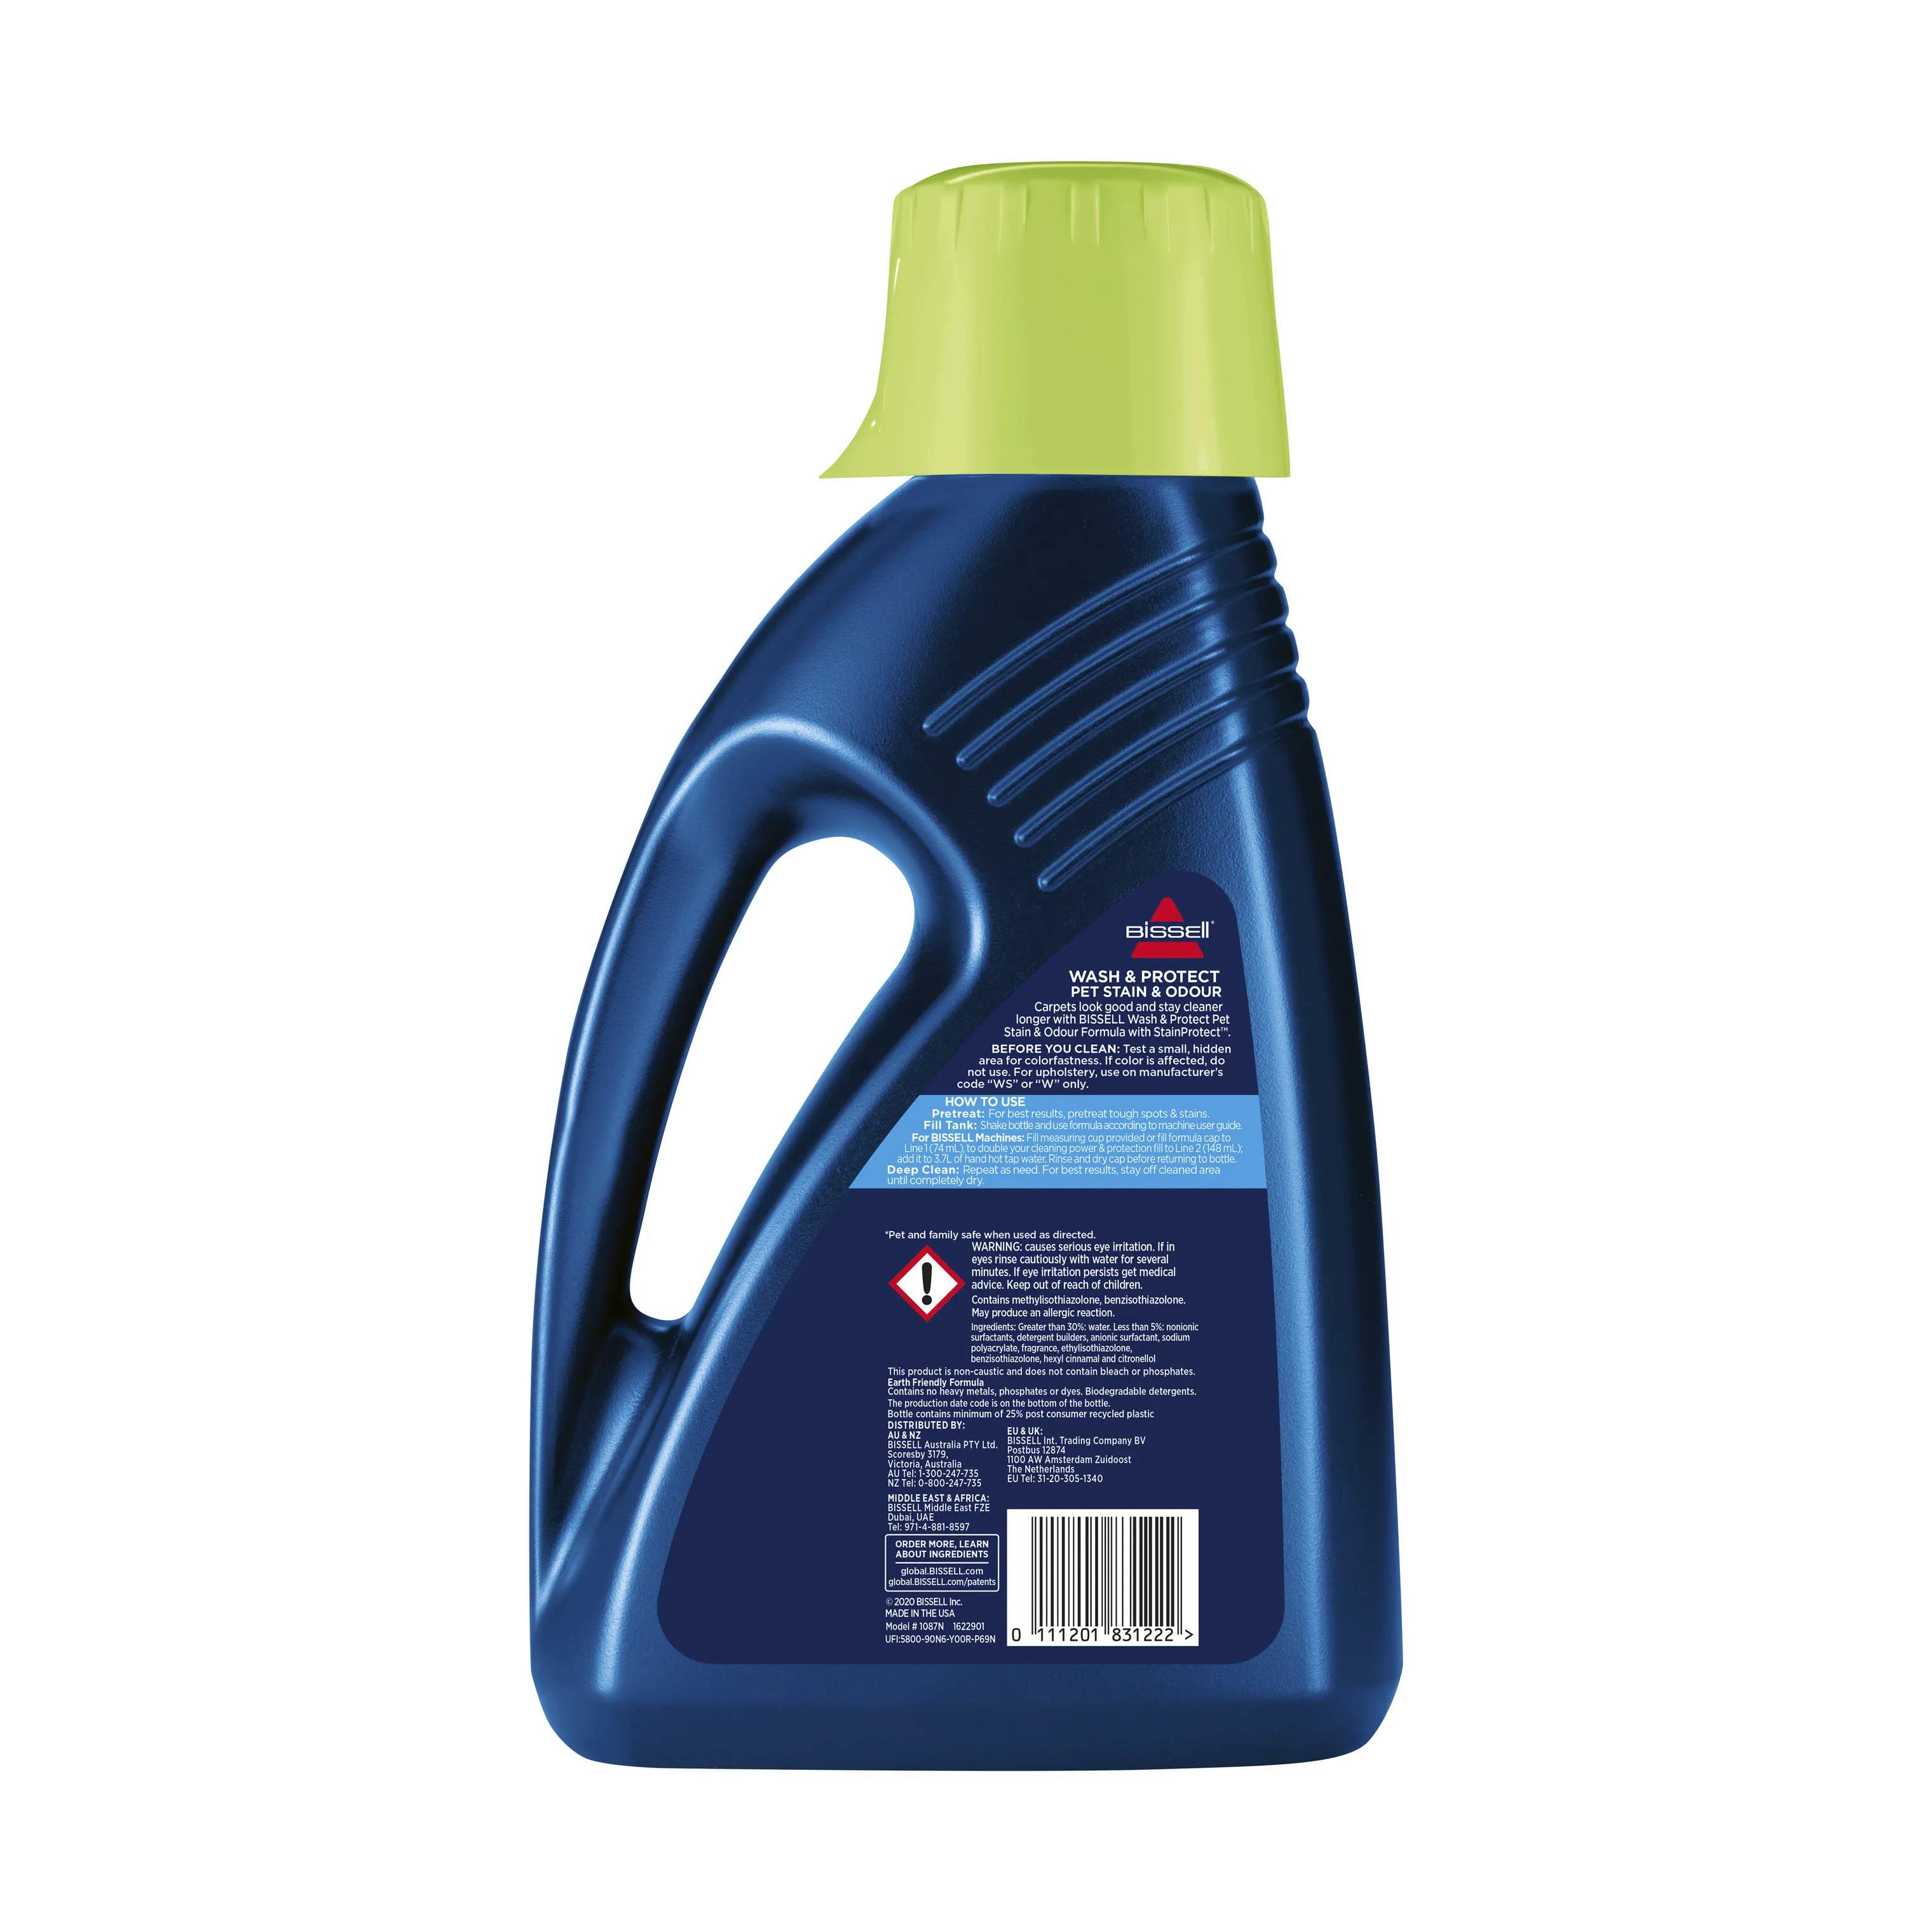 BISSELL øvrig rengøring Wash & Protect - Pet Stain & Odour Rengøringsmiddel